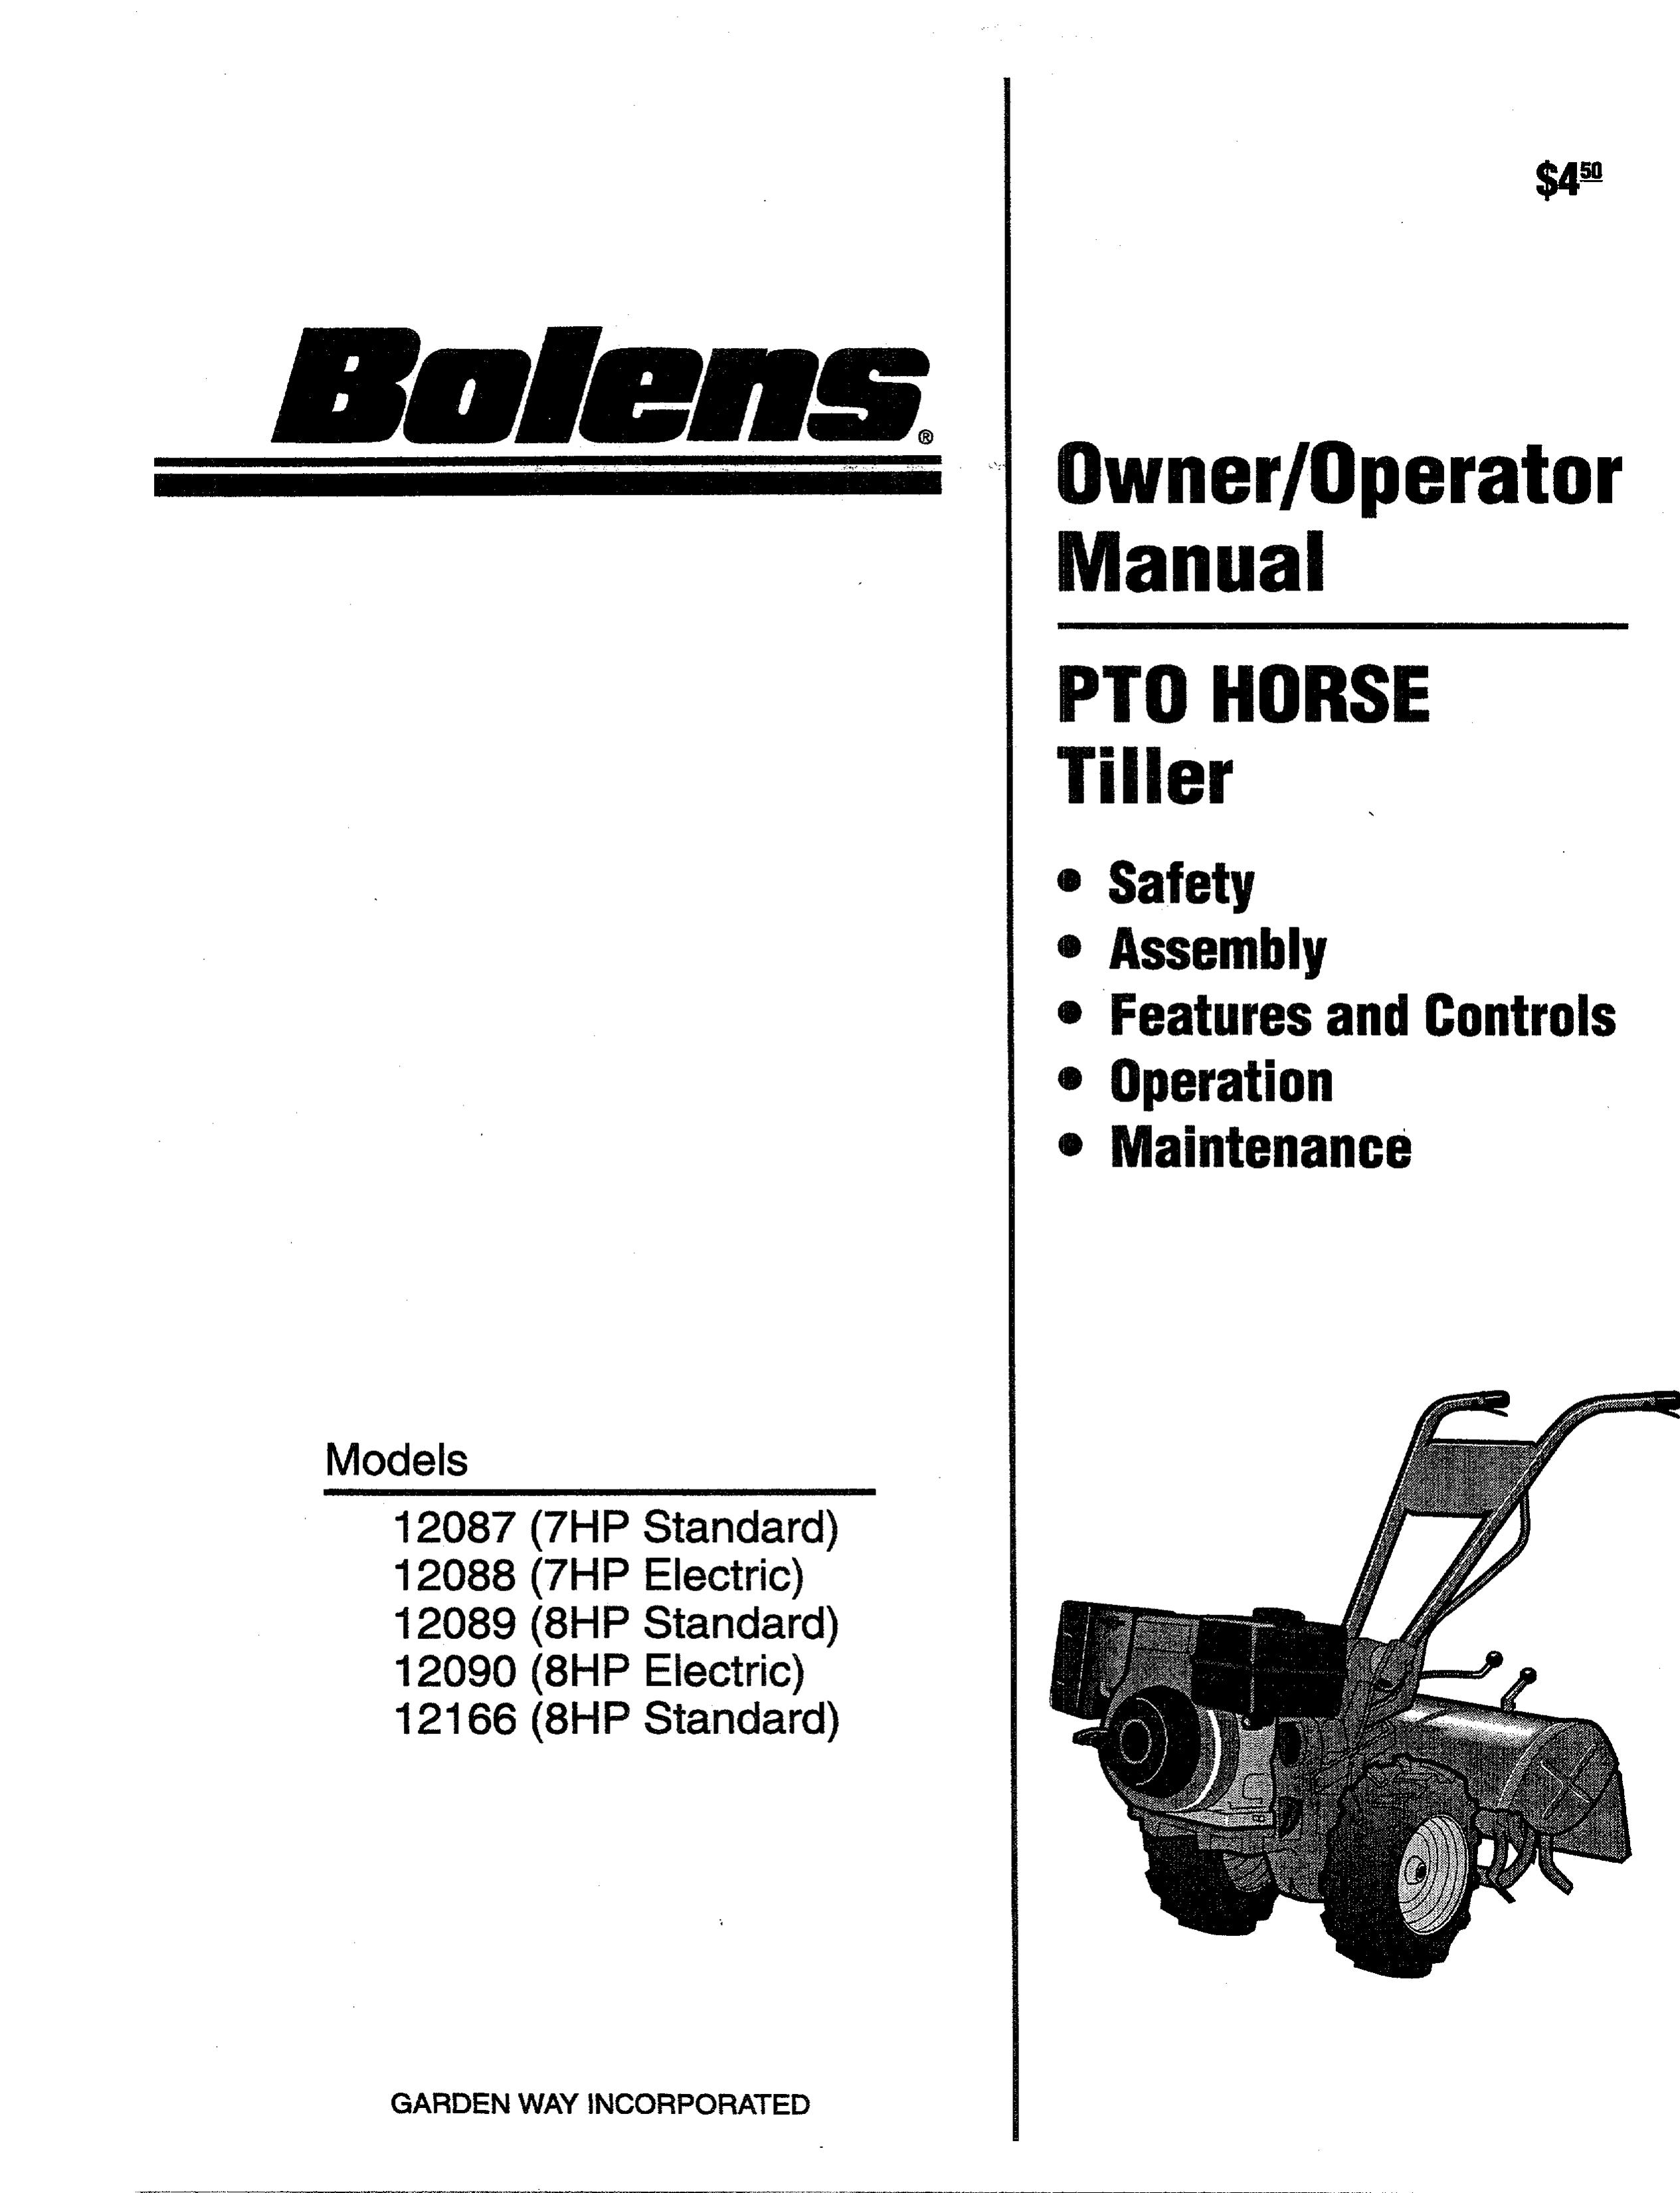 Bolens 12090-8HP Tiller User Manual